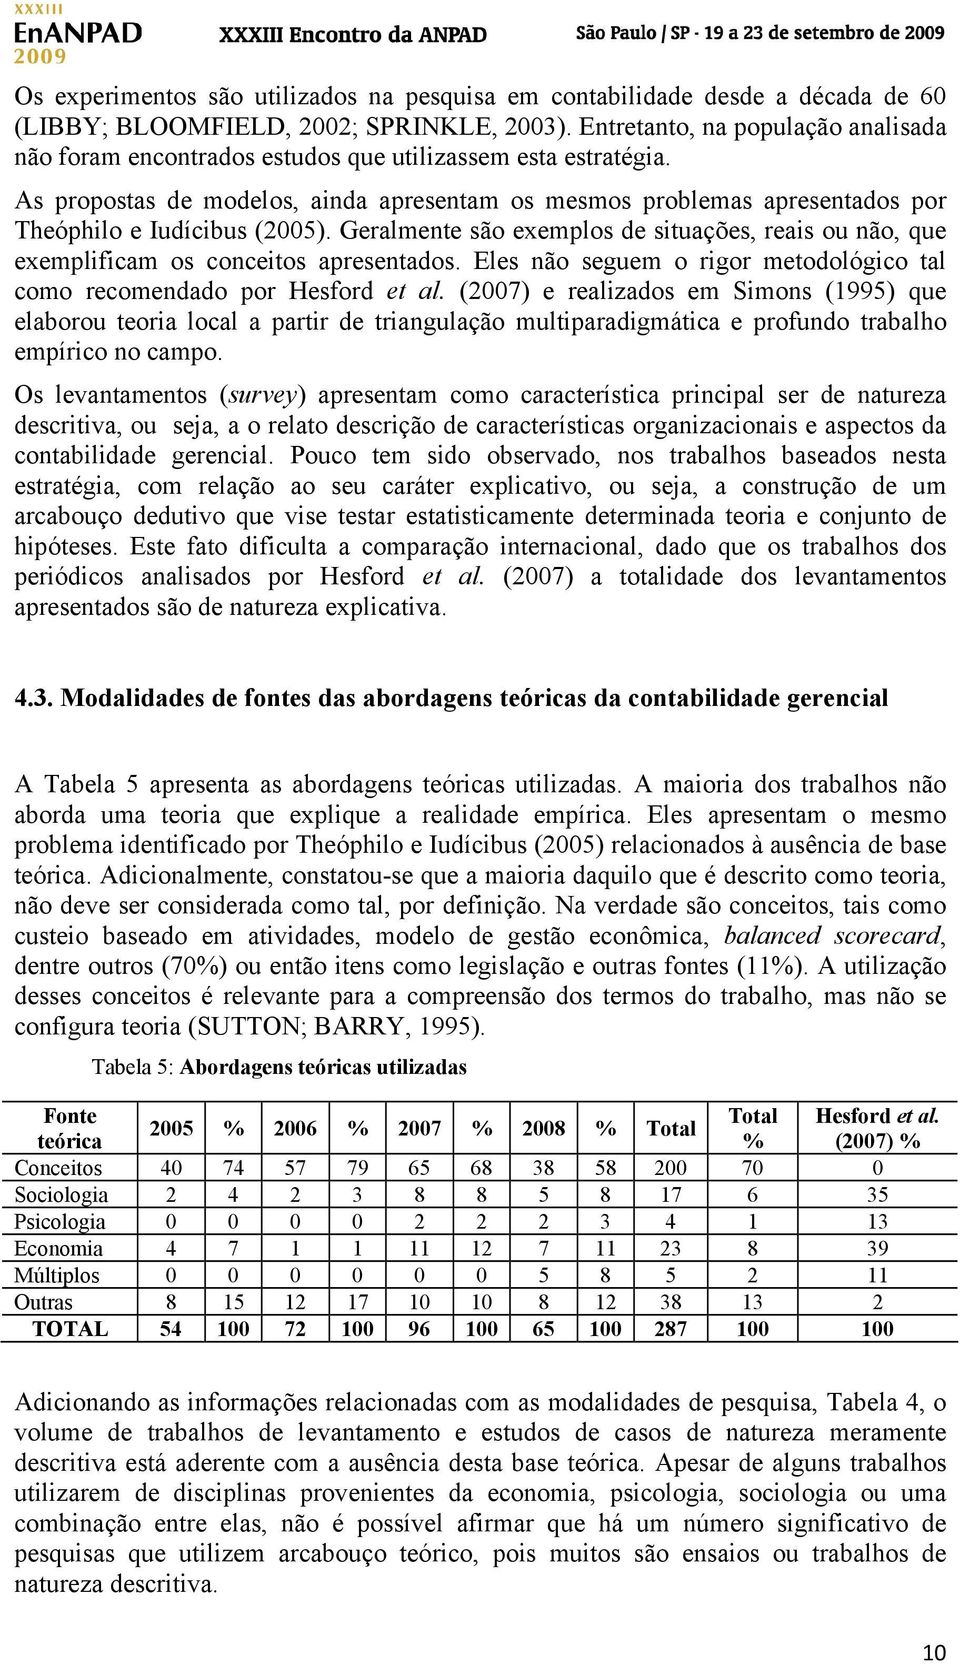 As propostas de modelos, ainda apresentam os mesmos problemas apresentados por Theóphilo e Iudícibus (2005).